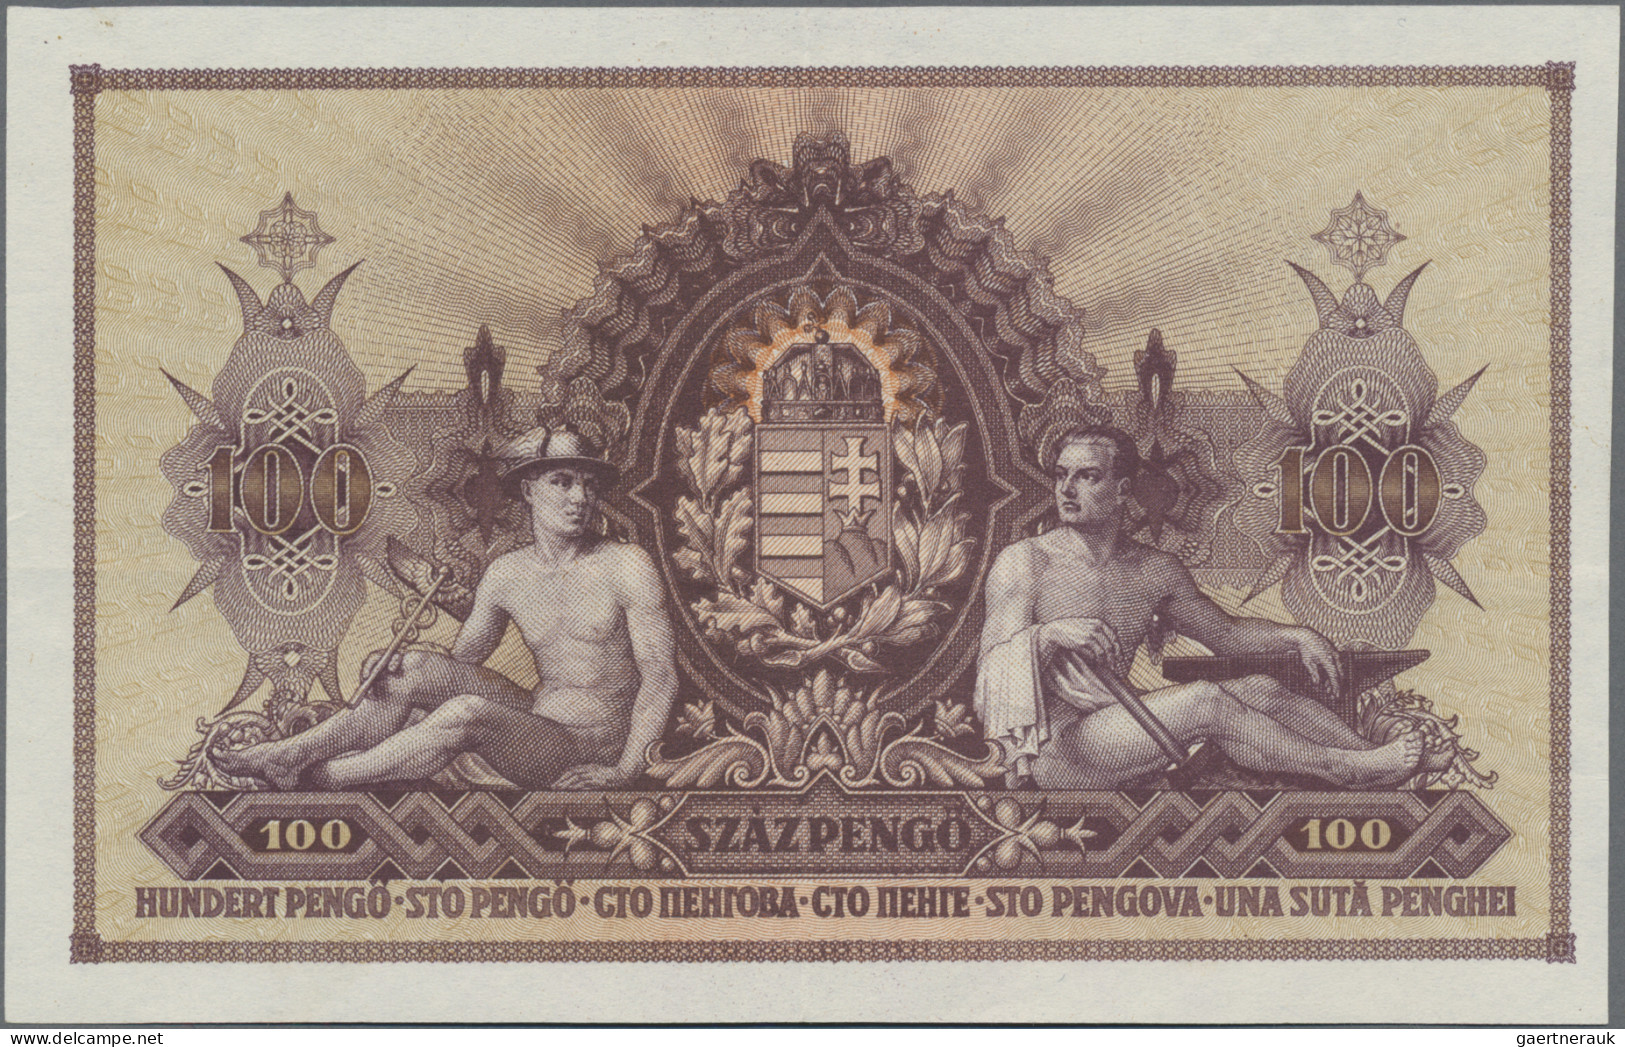 Hungary: Magyar Nemzeti Bank 100 Pengö 1943, P.115, Unissued Series Without Seri - Hungary